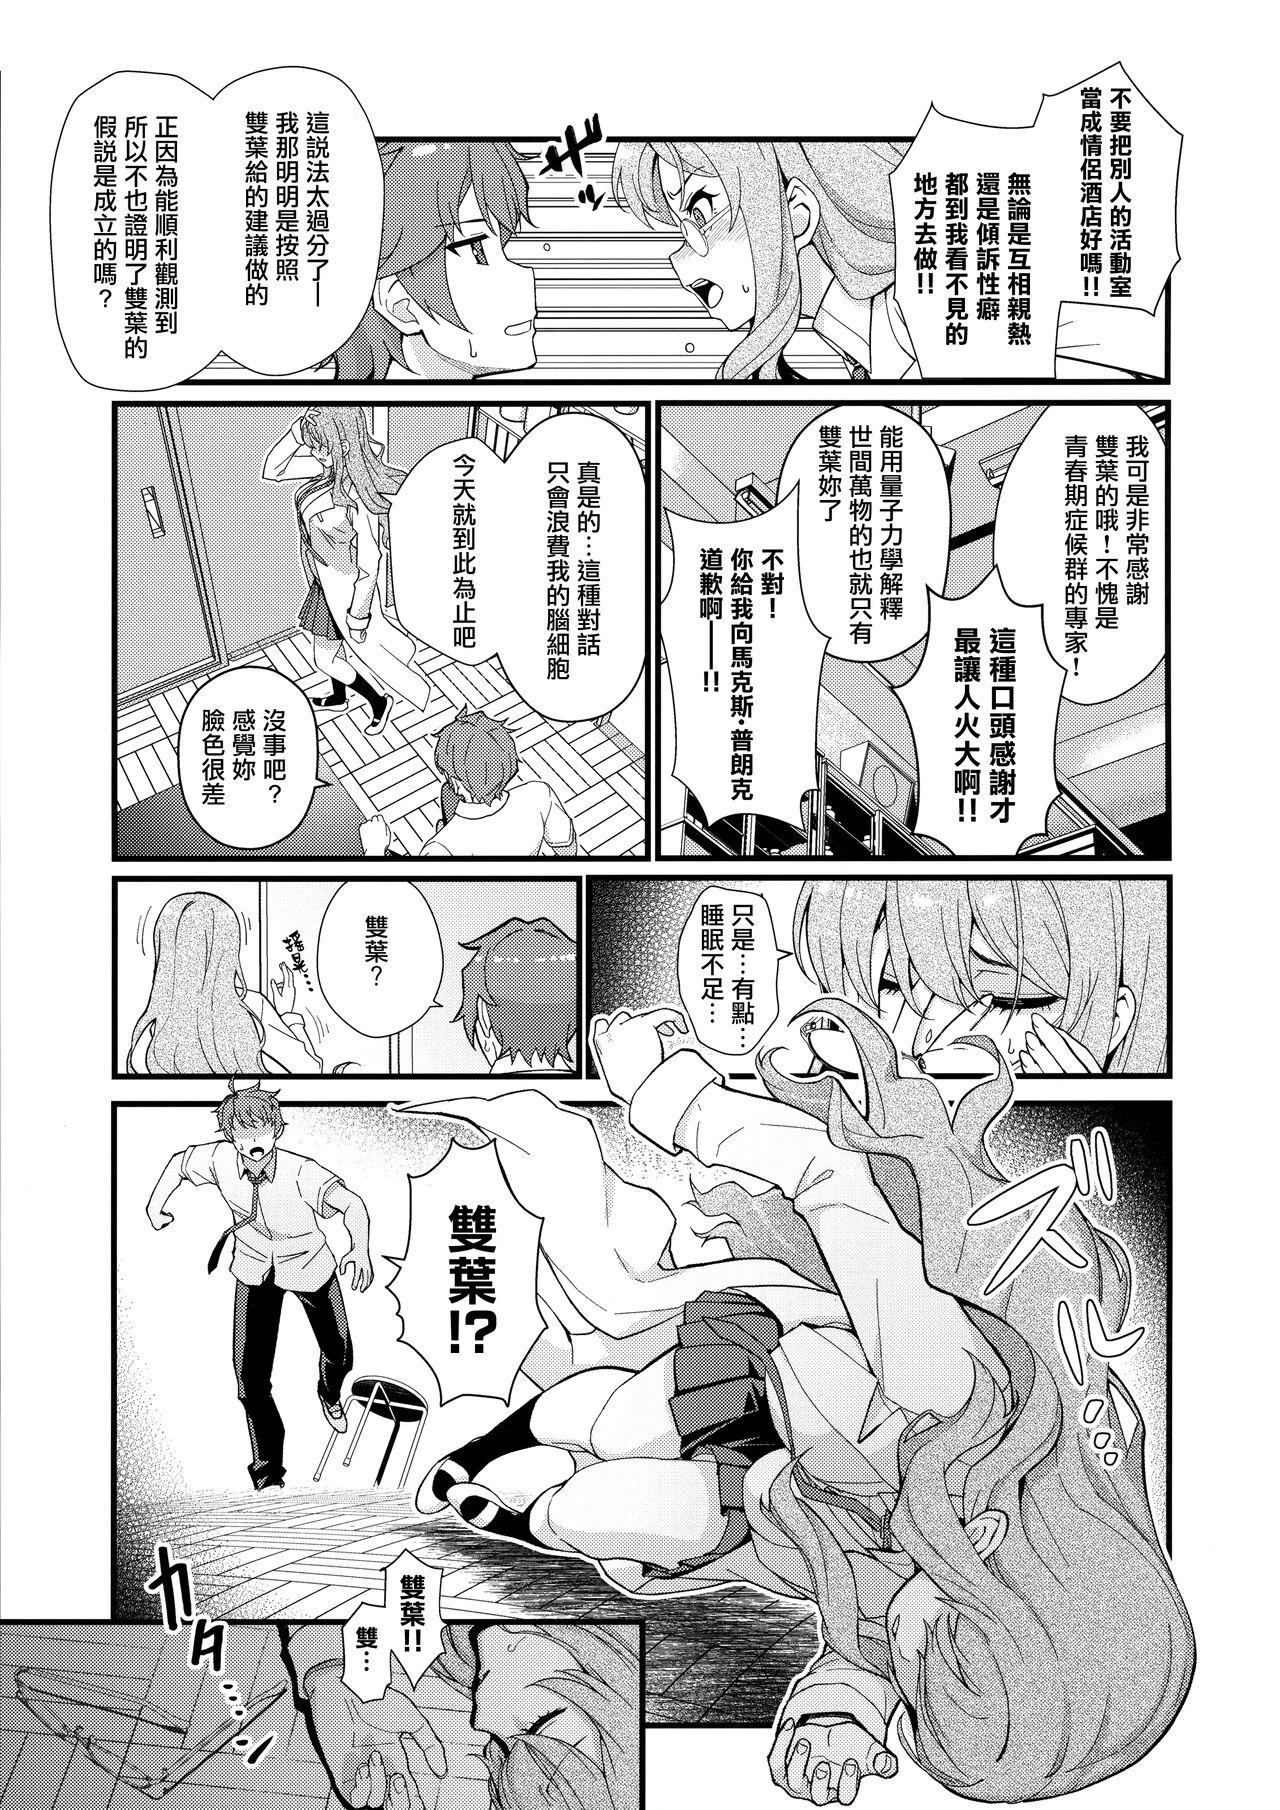 Sexo MULTI REALITY - Seishun buta yarou wa bunny girl senpai no yume o minai Casero - Page 5